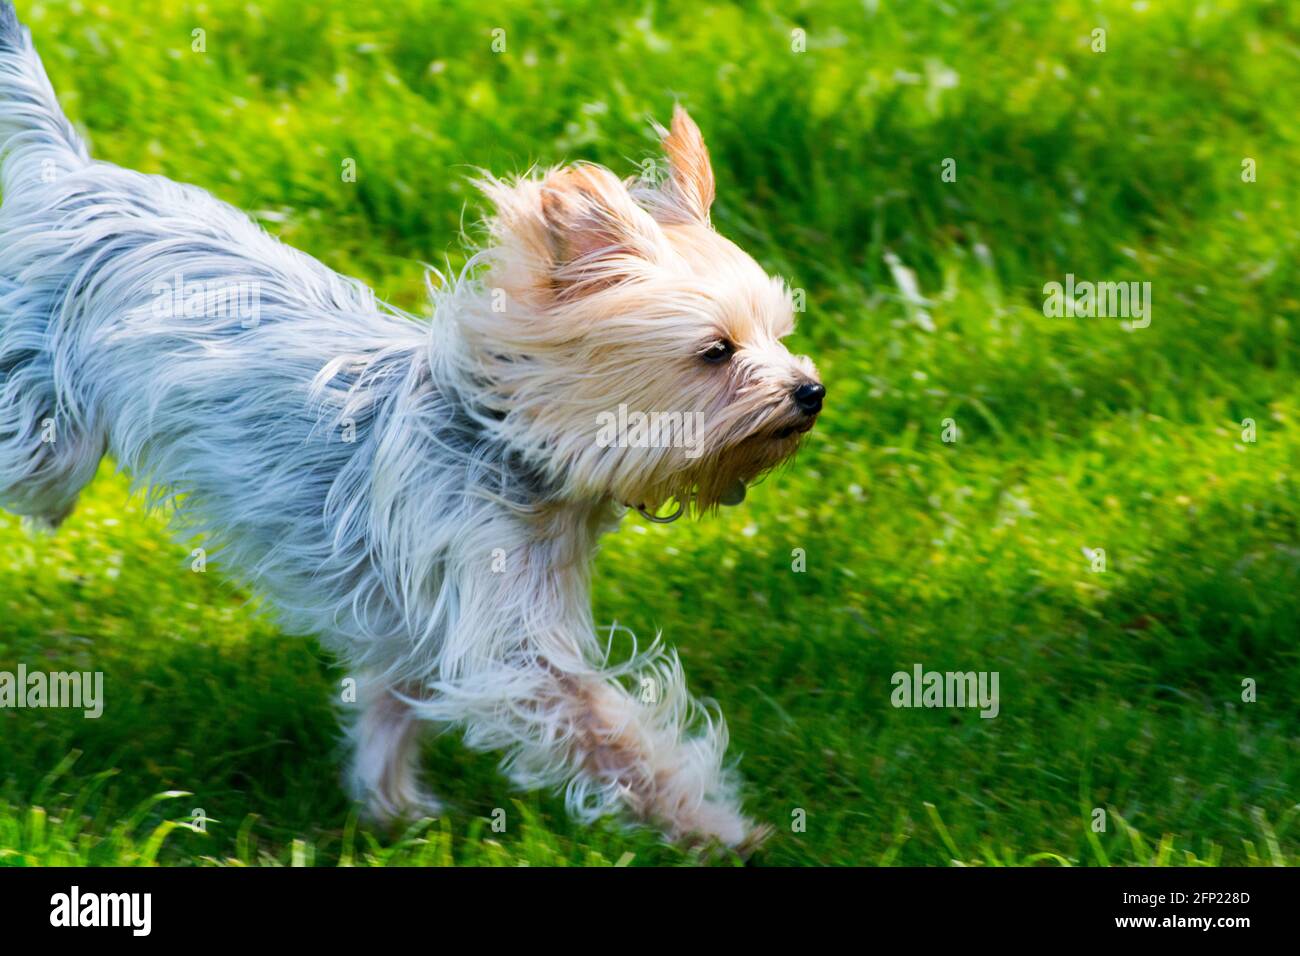 Yorkshire terrier dog in full flight Stock Photo